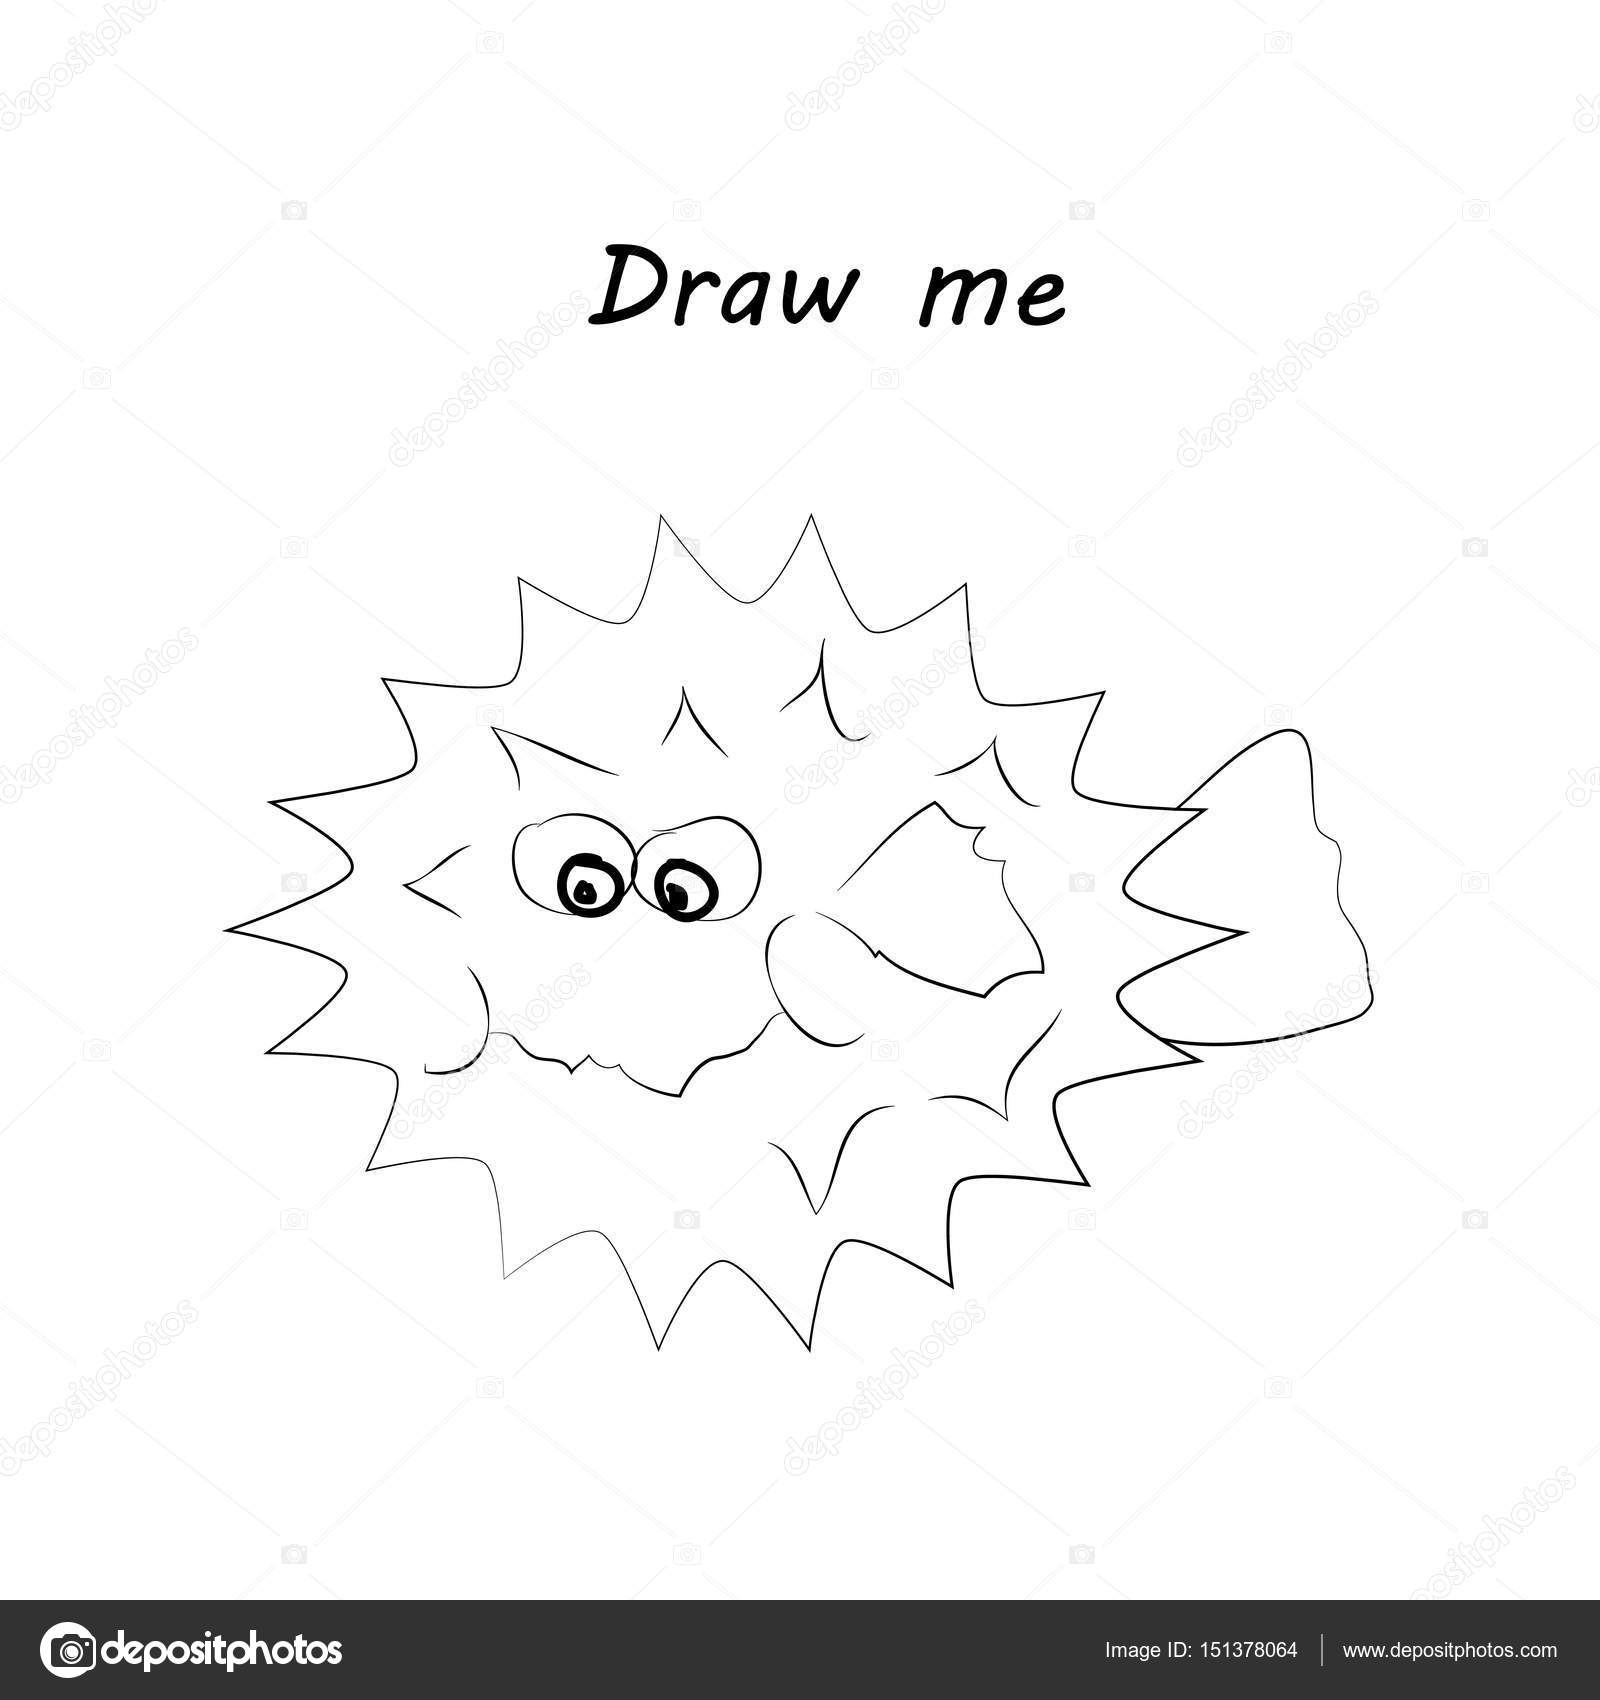 Draw me illustrazione di animali marini Il pesce istrice gioco da colorare per bambini